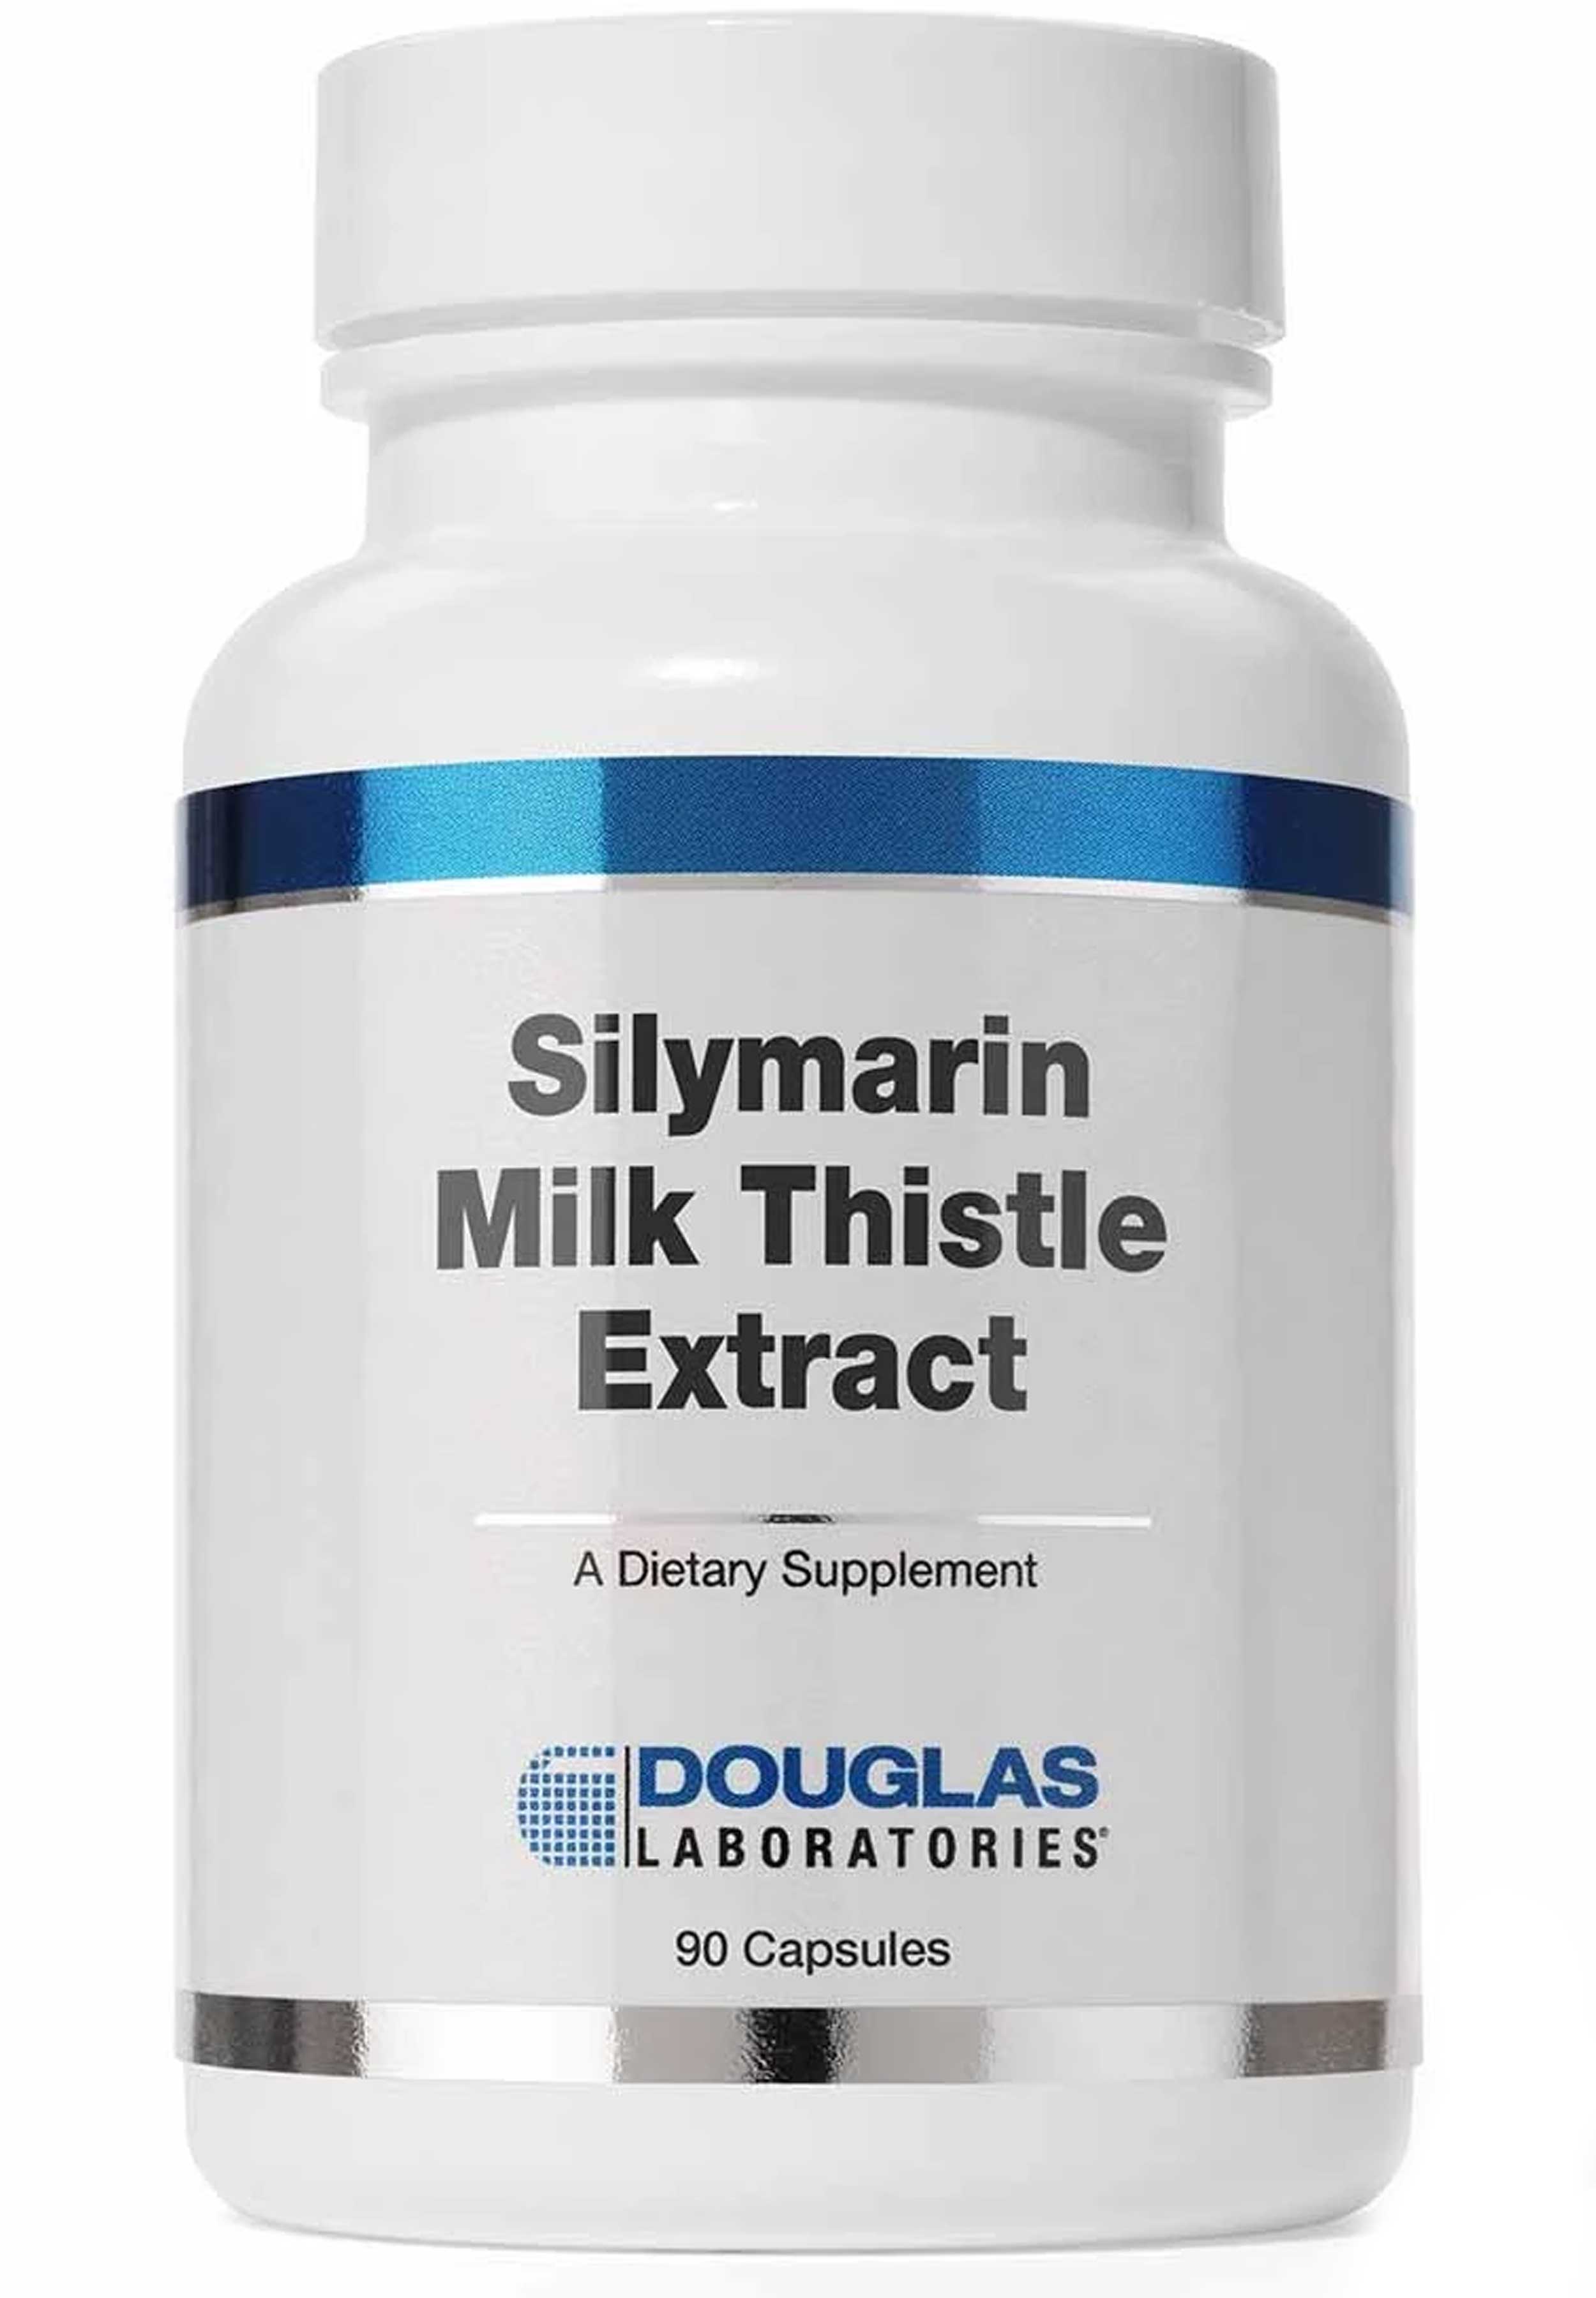 Douglas Laboratories Silymarin Milk Thistle Extract